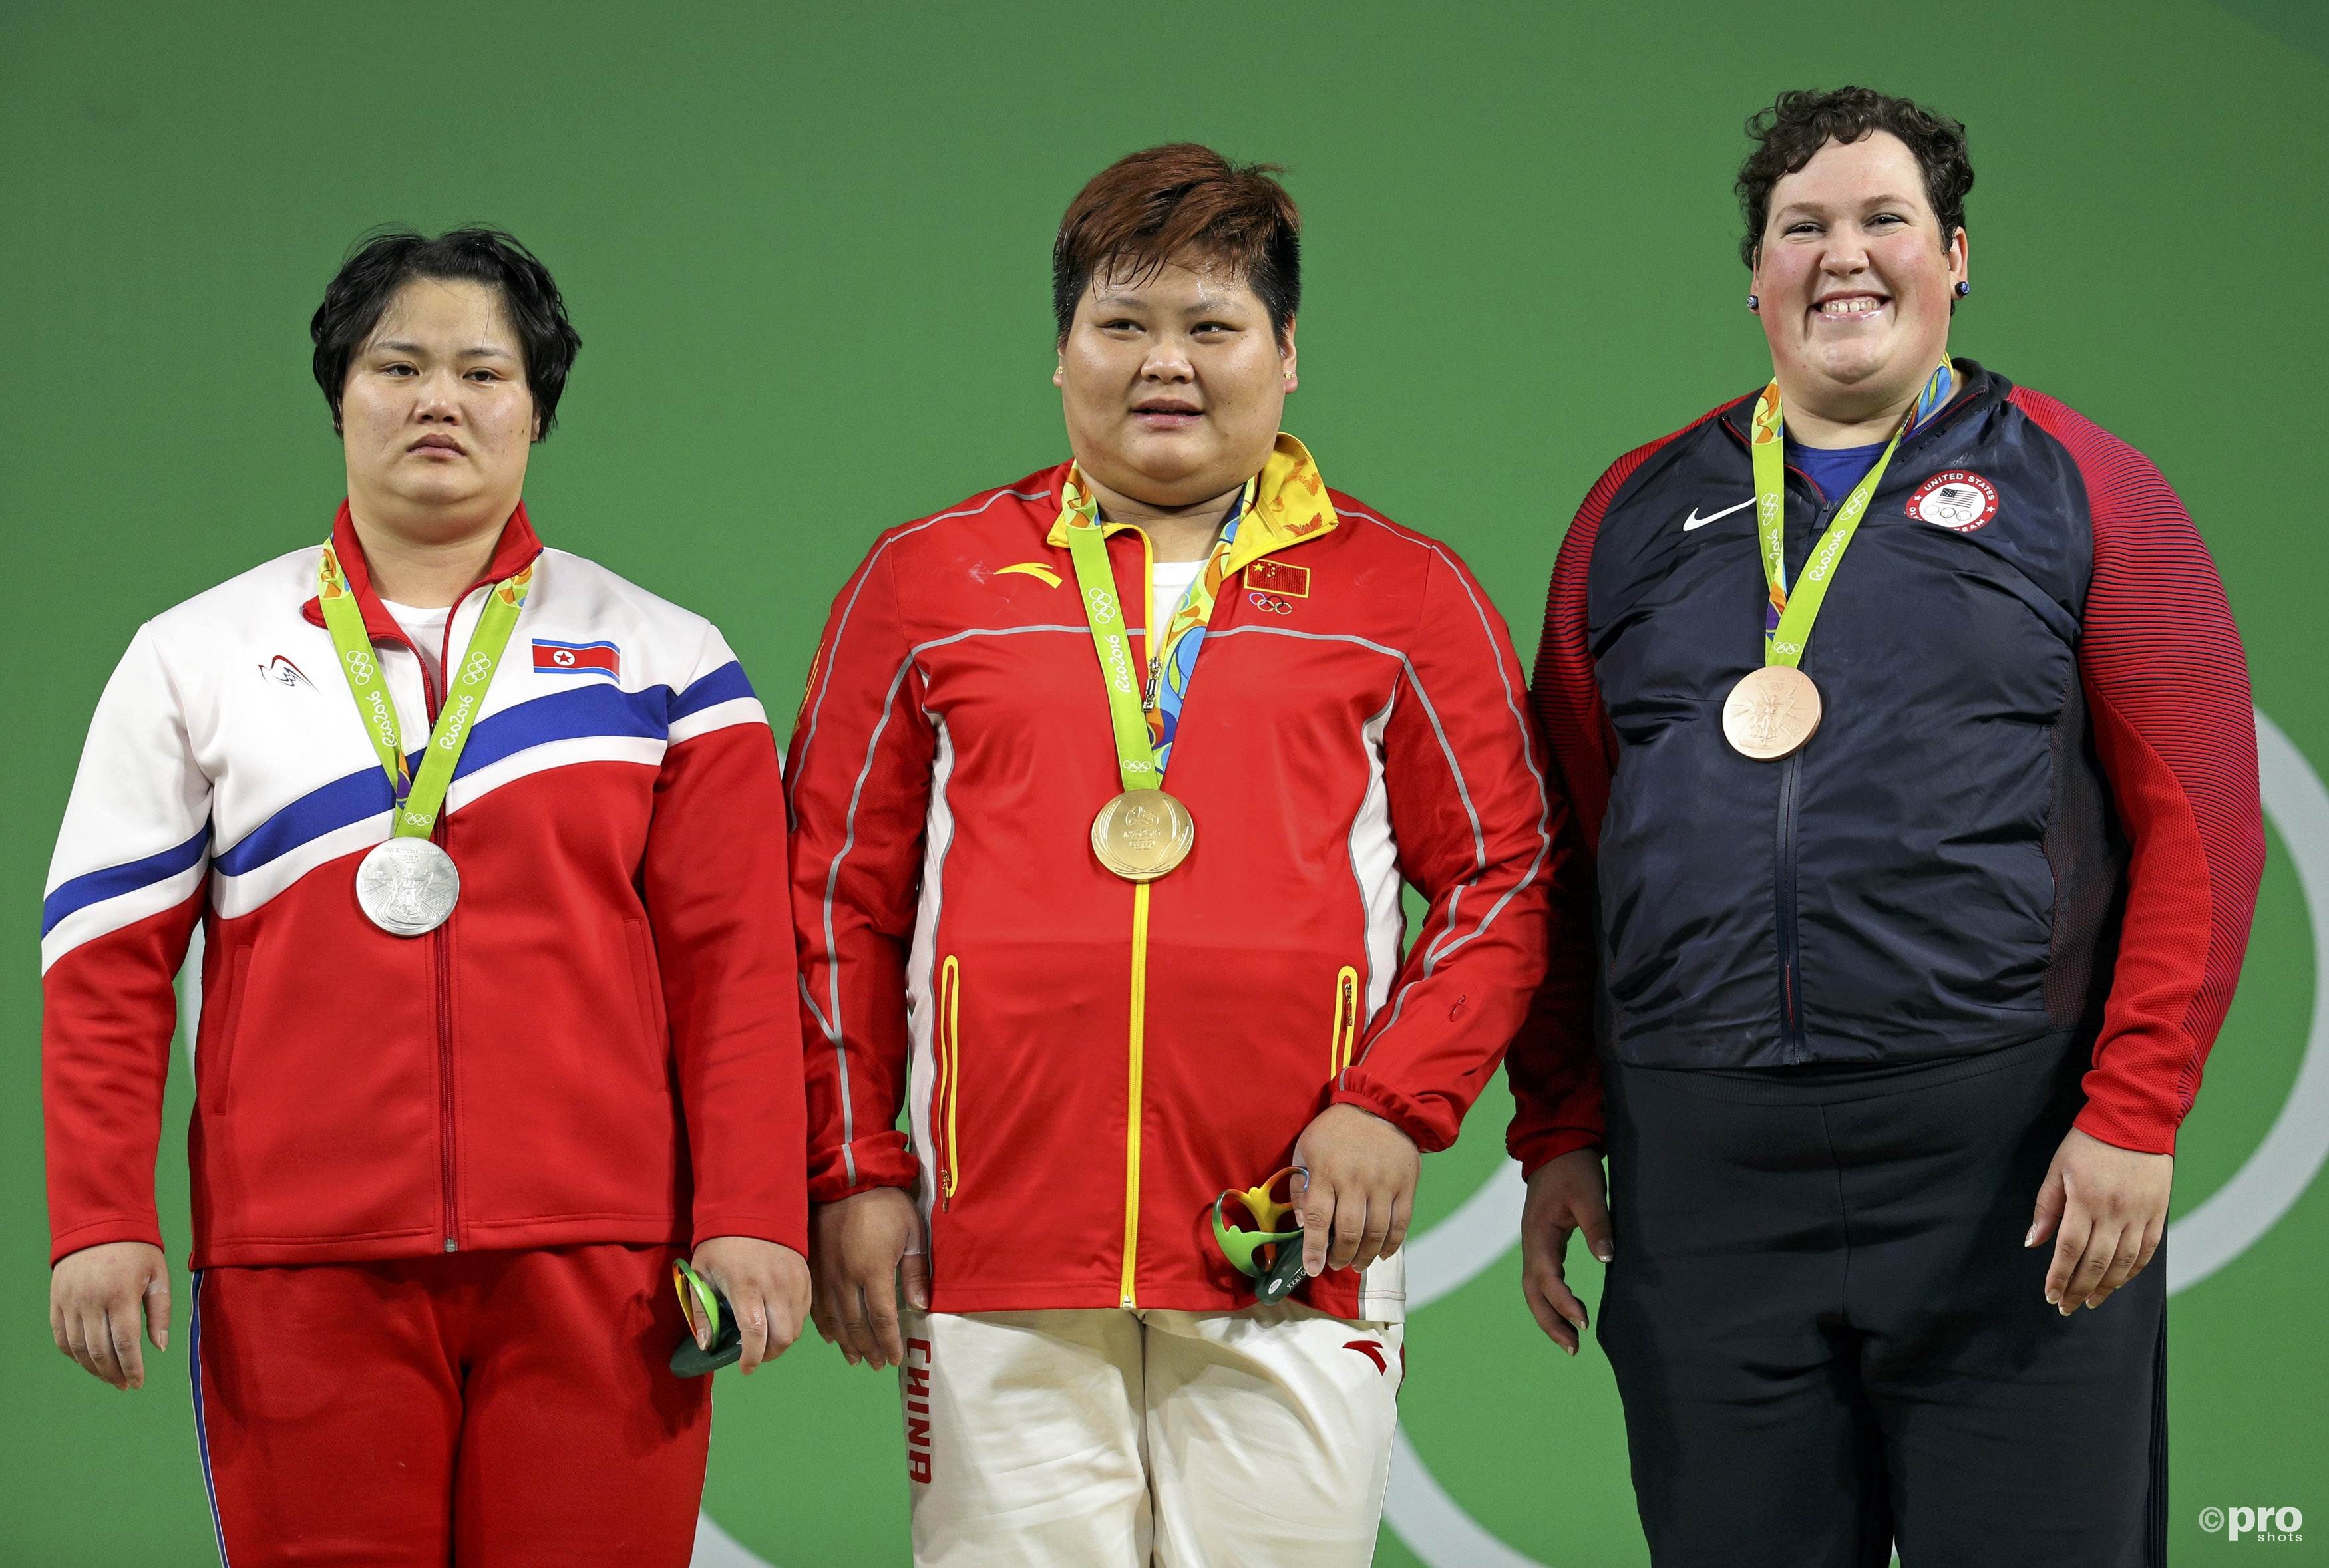 Het podium van de superzwaargewichten, met Kim, Meng en Robles (PROSHOTS/Action Images)